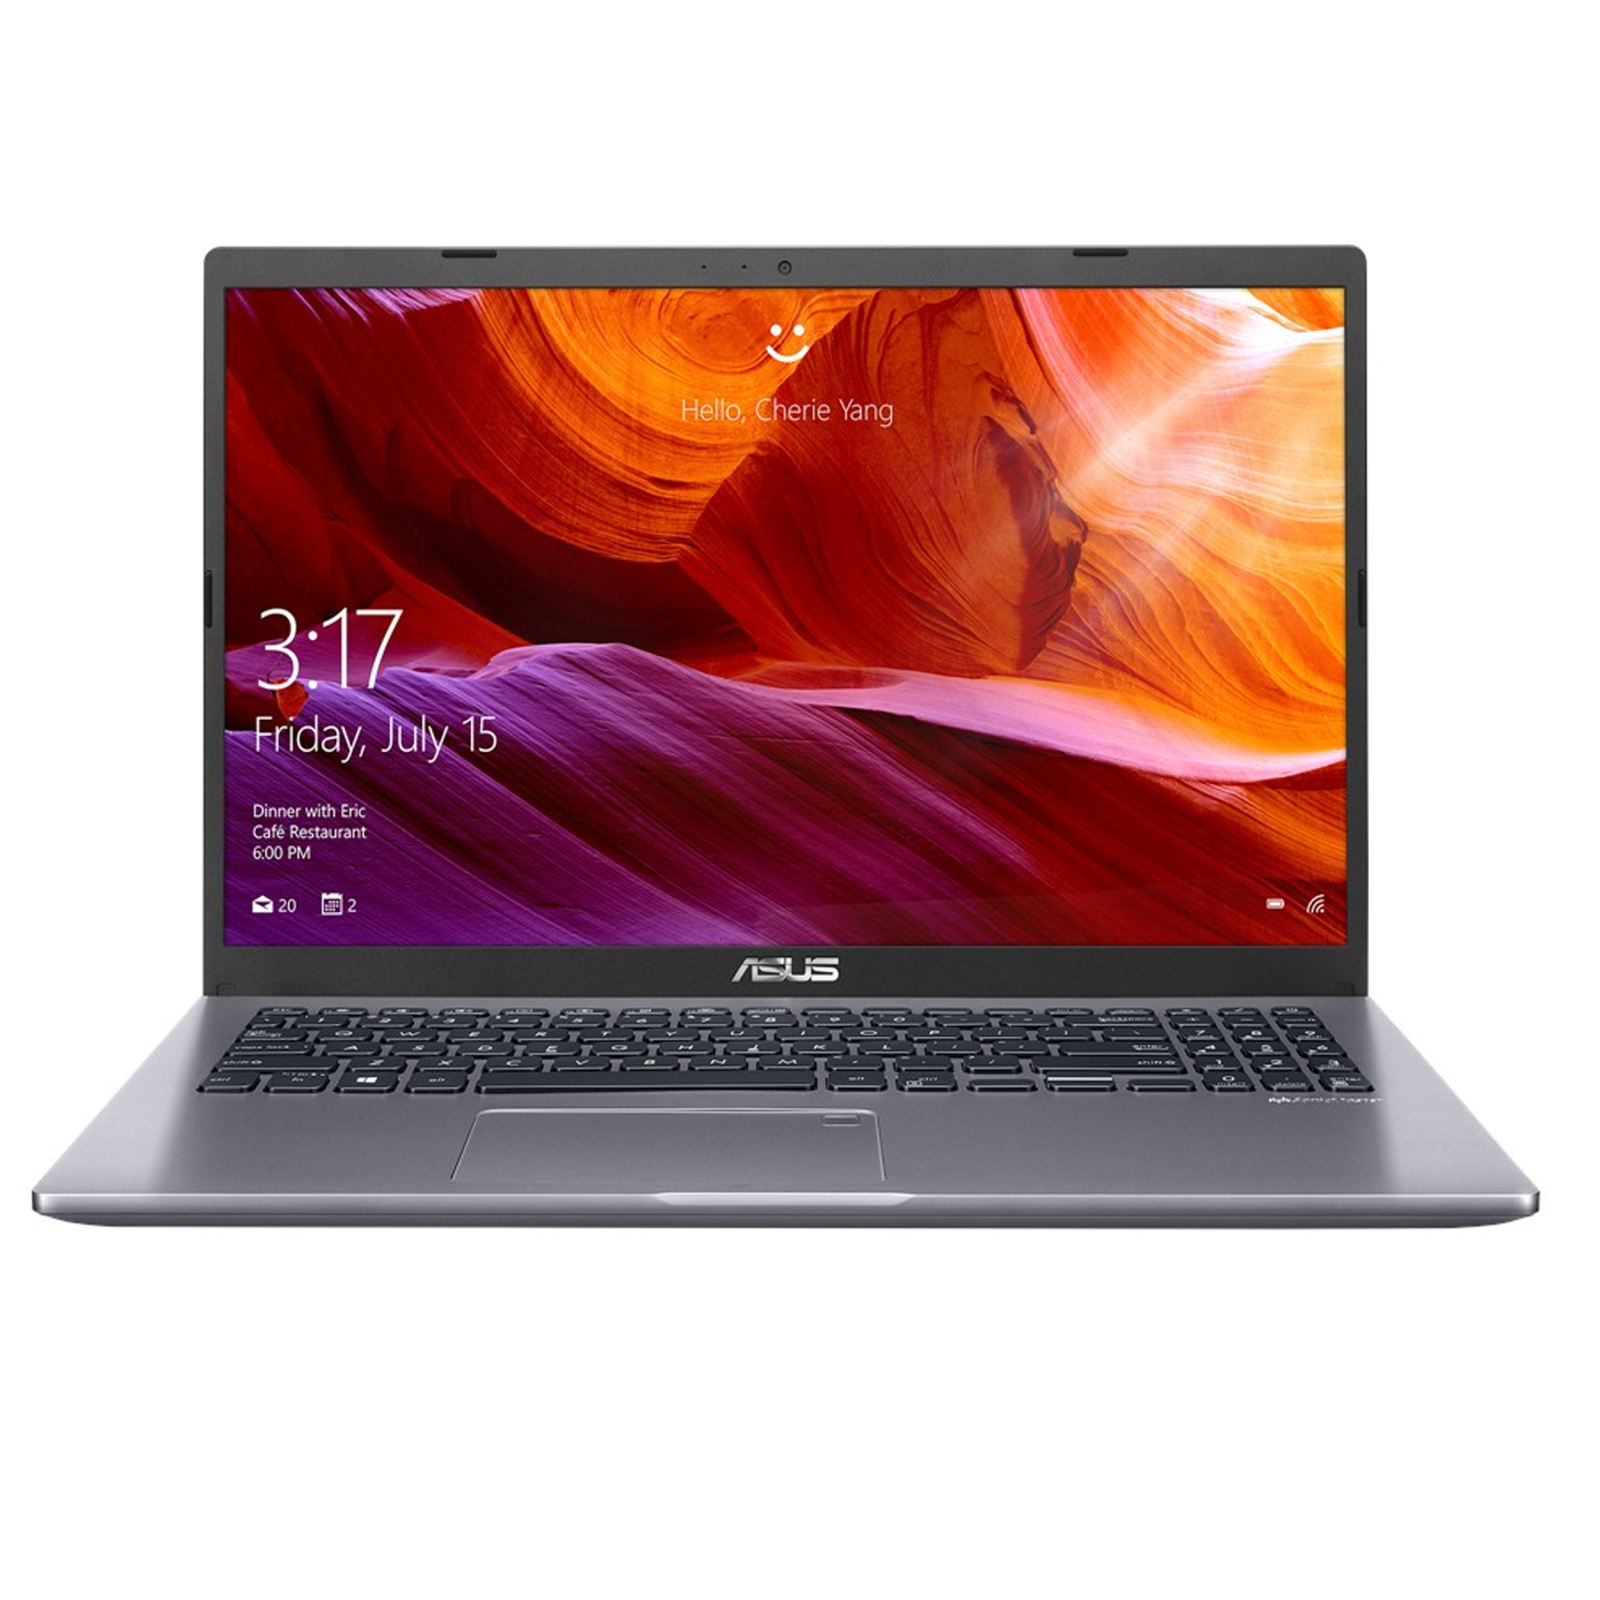  Asus R521JB-B Laptop